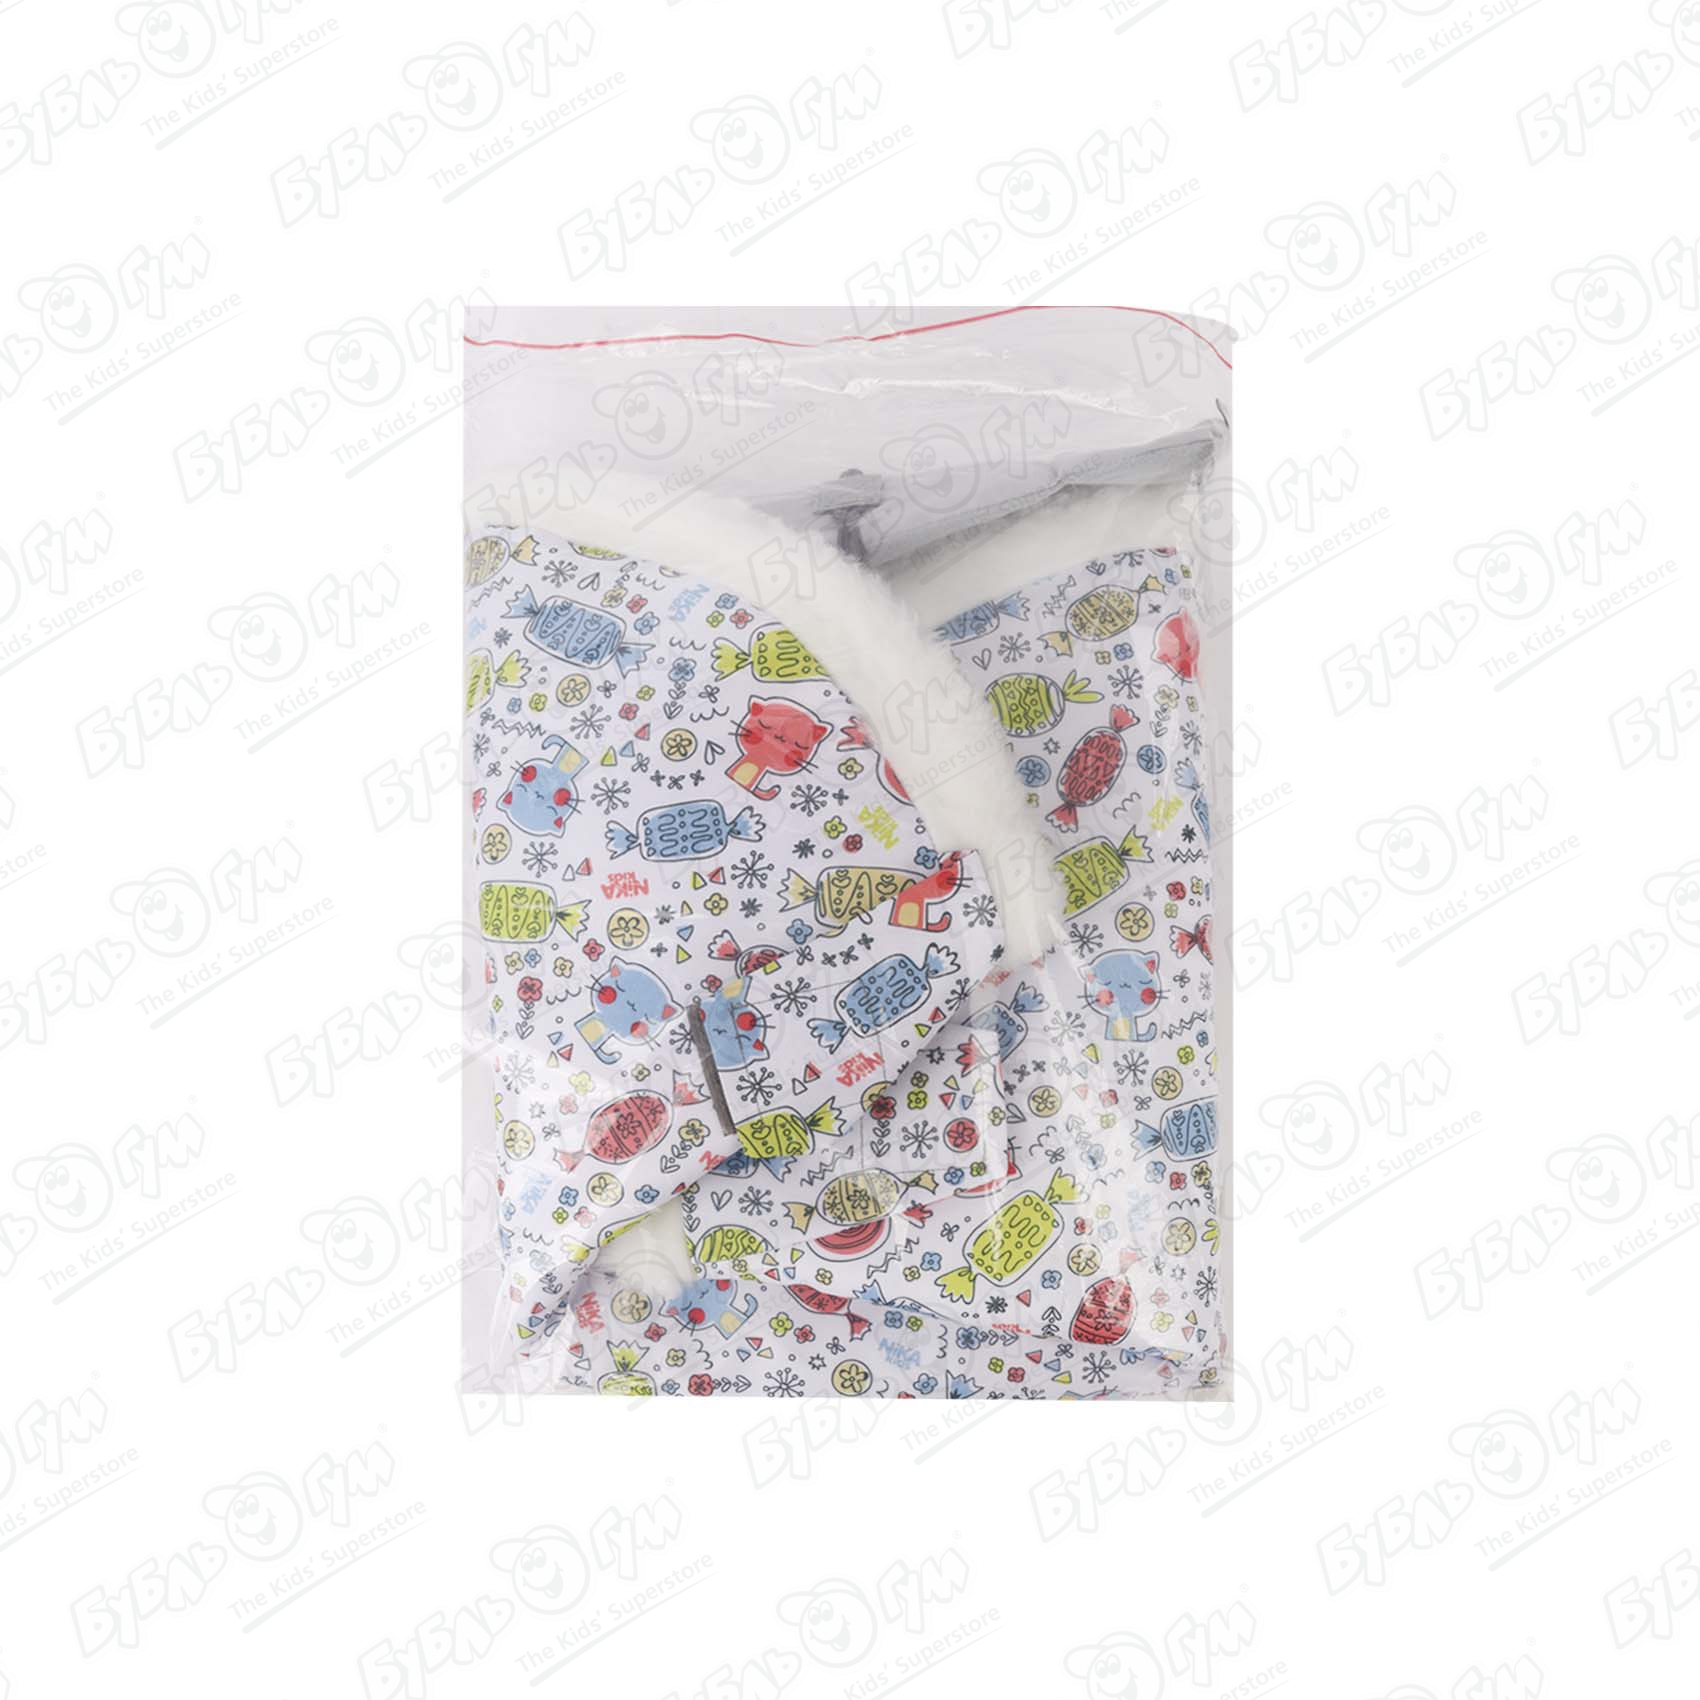 Сиденье-матрац для санок универсальное принт с конфетками, цвет белый - фото 11